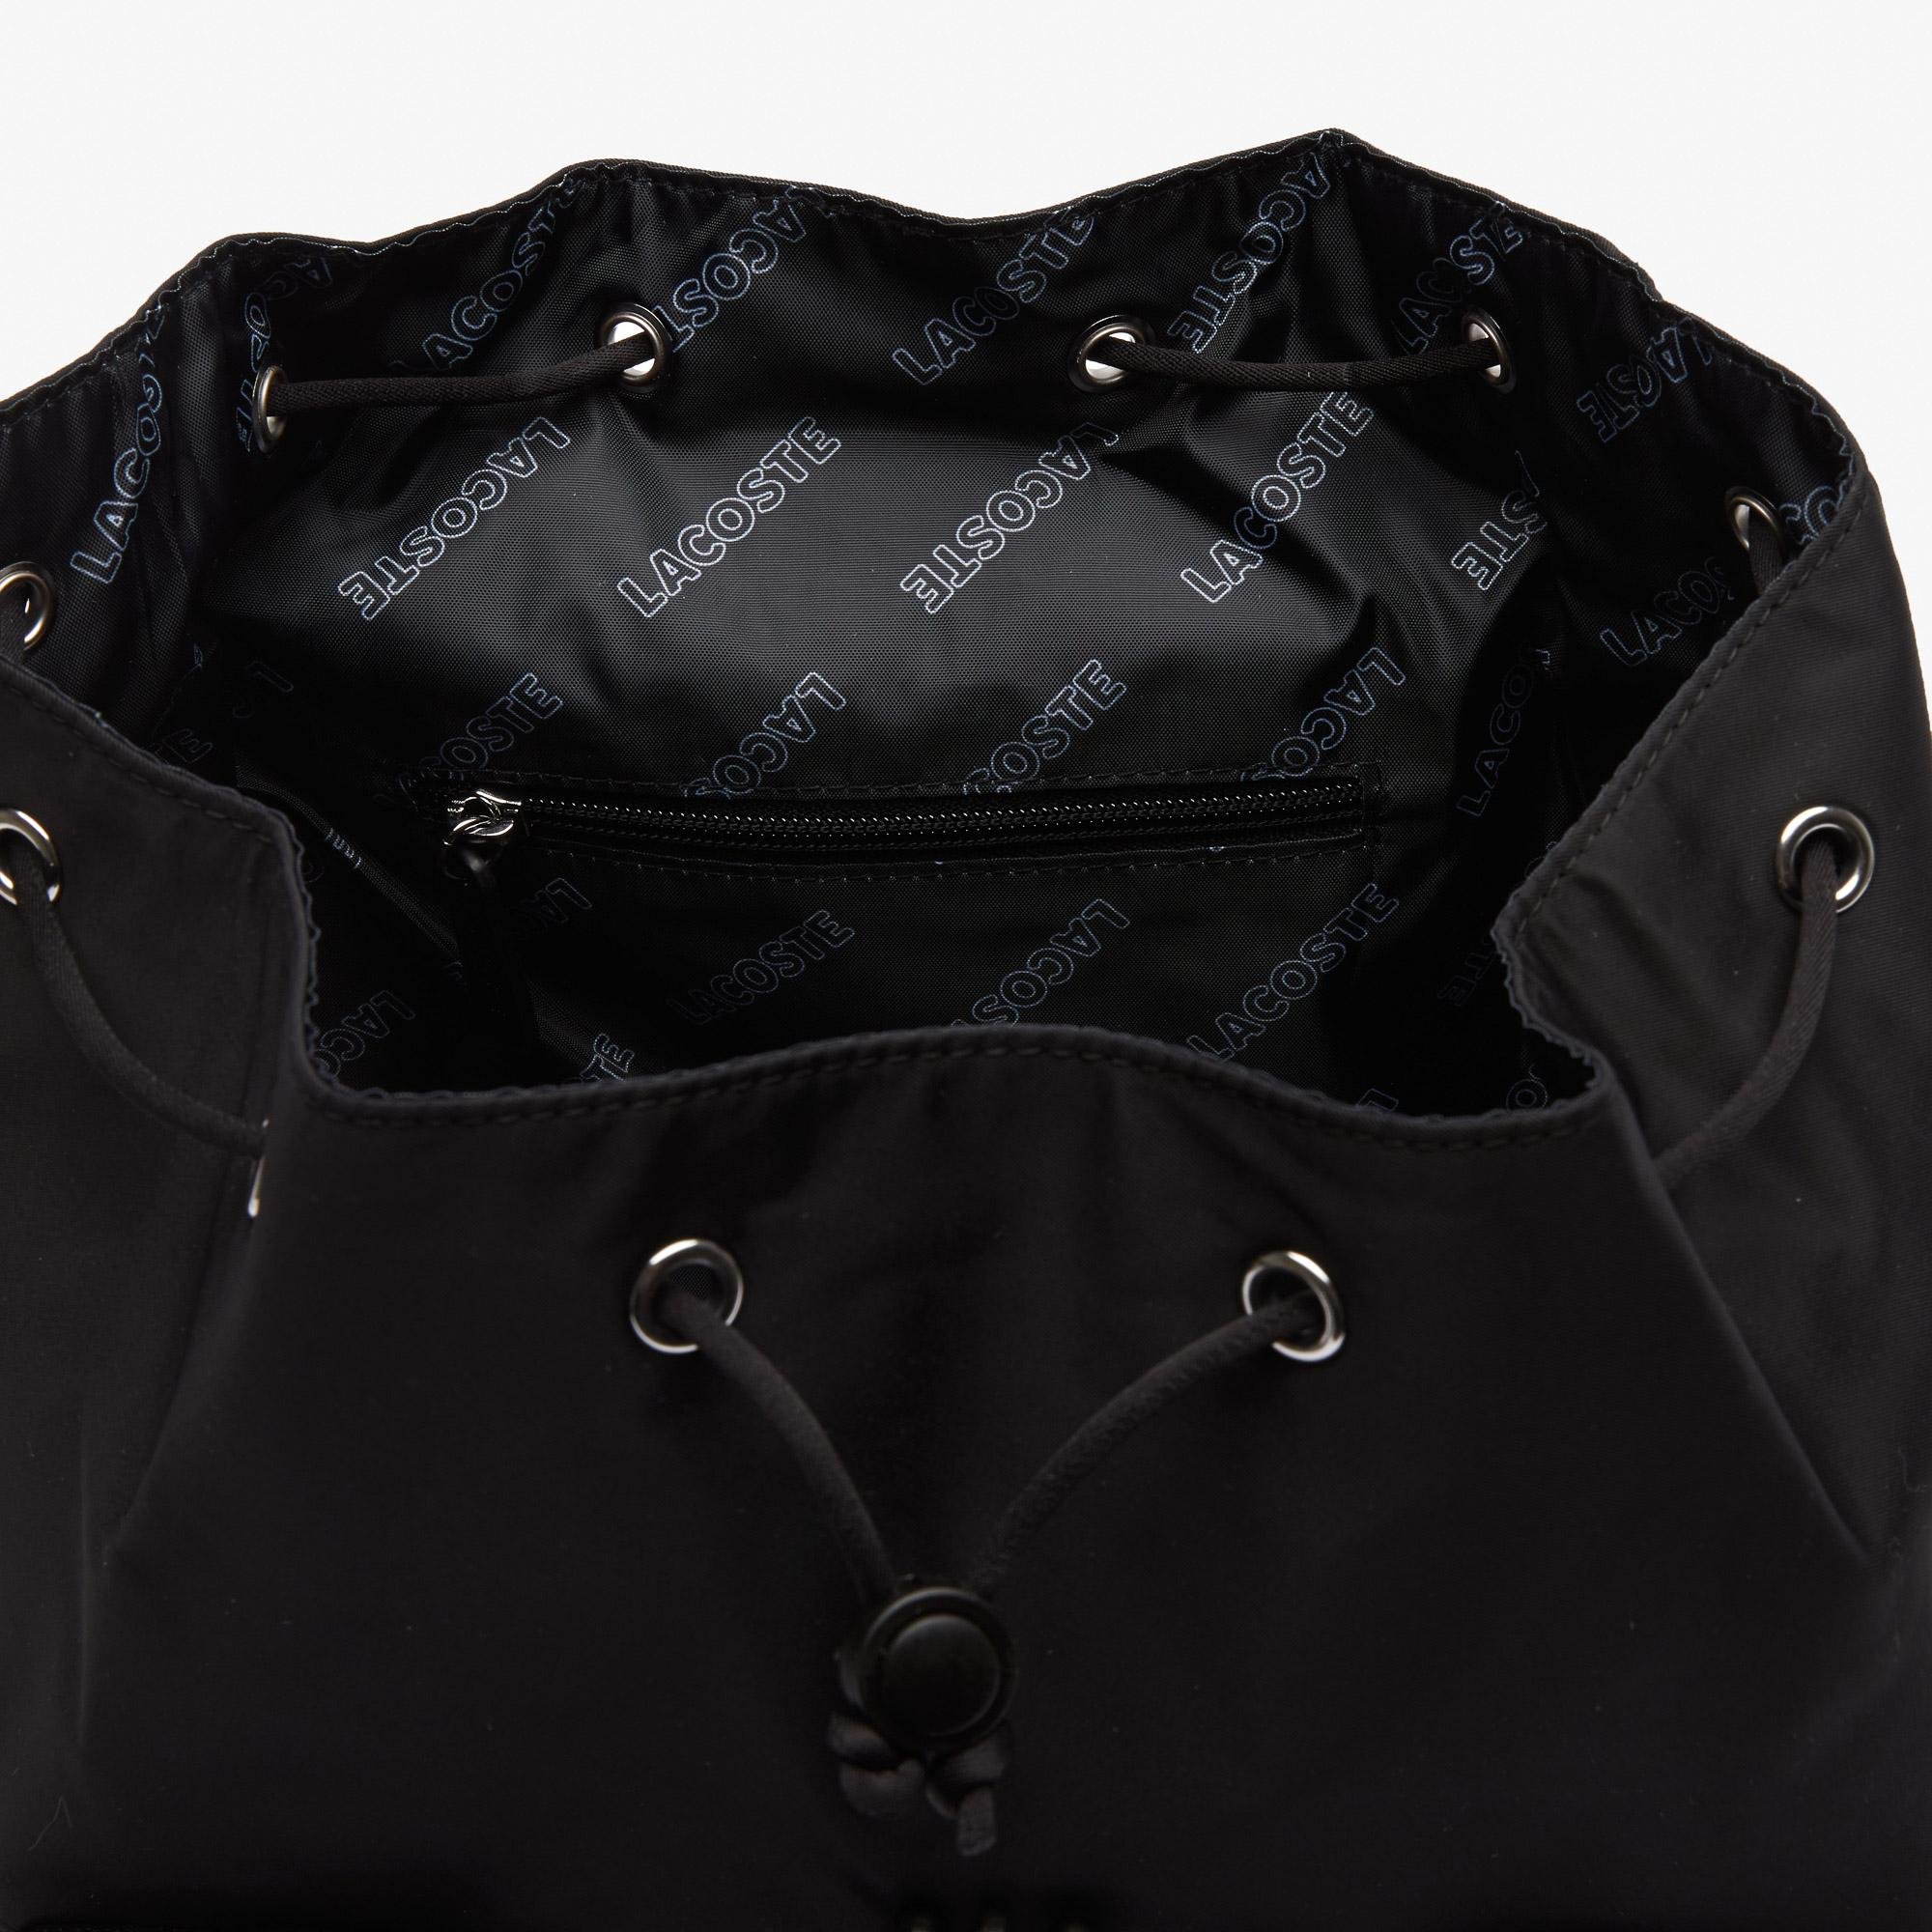 Lacoste  Unisex značkový nylonový batoh s chlopňou